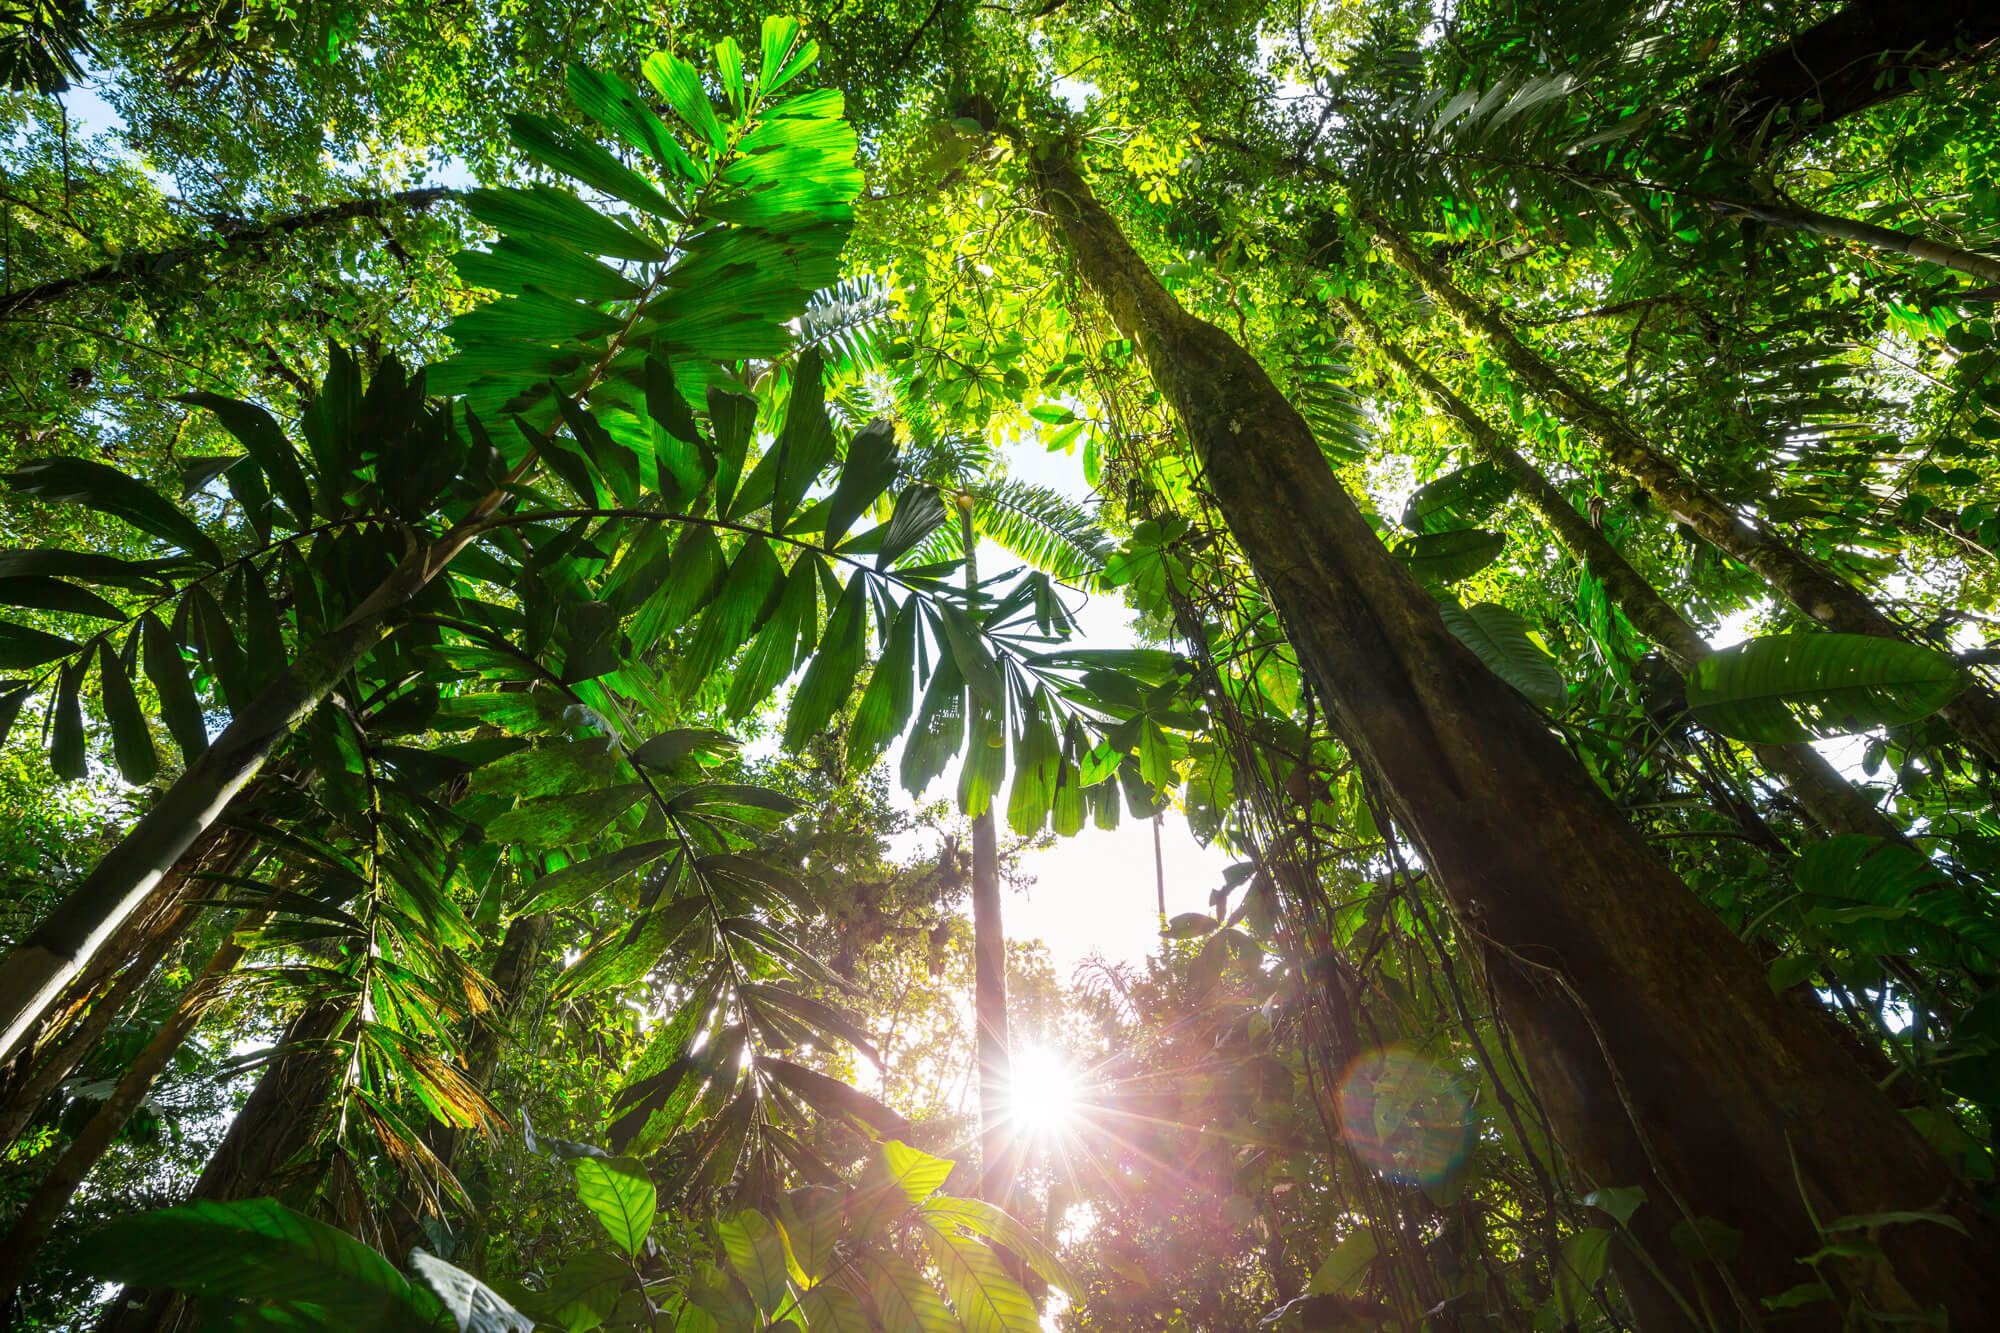 Upward view of jungle in Costa Rica.